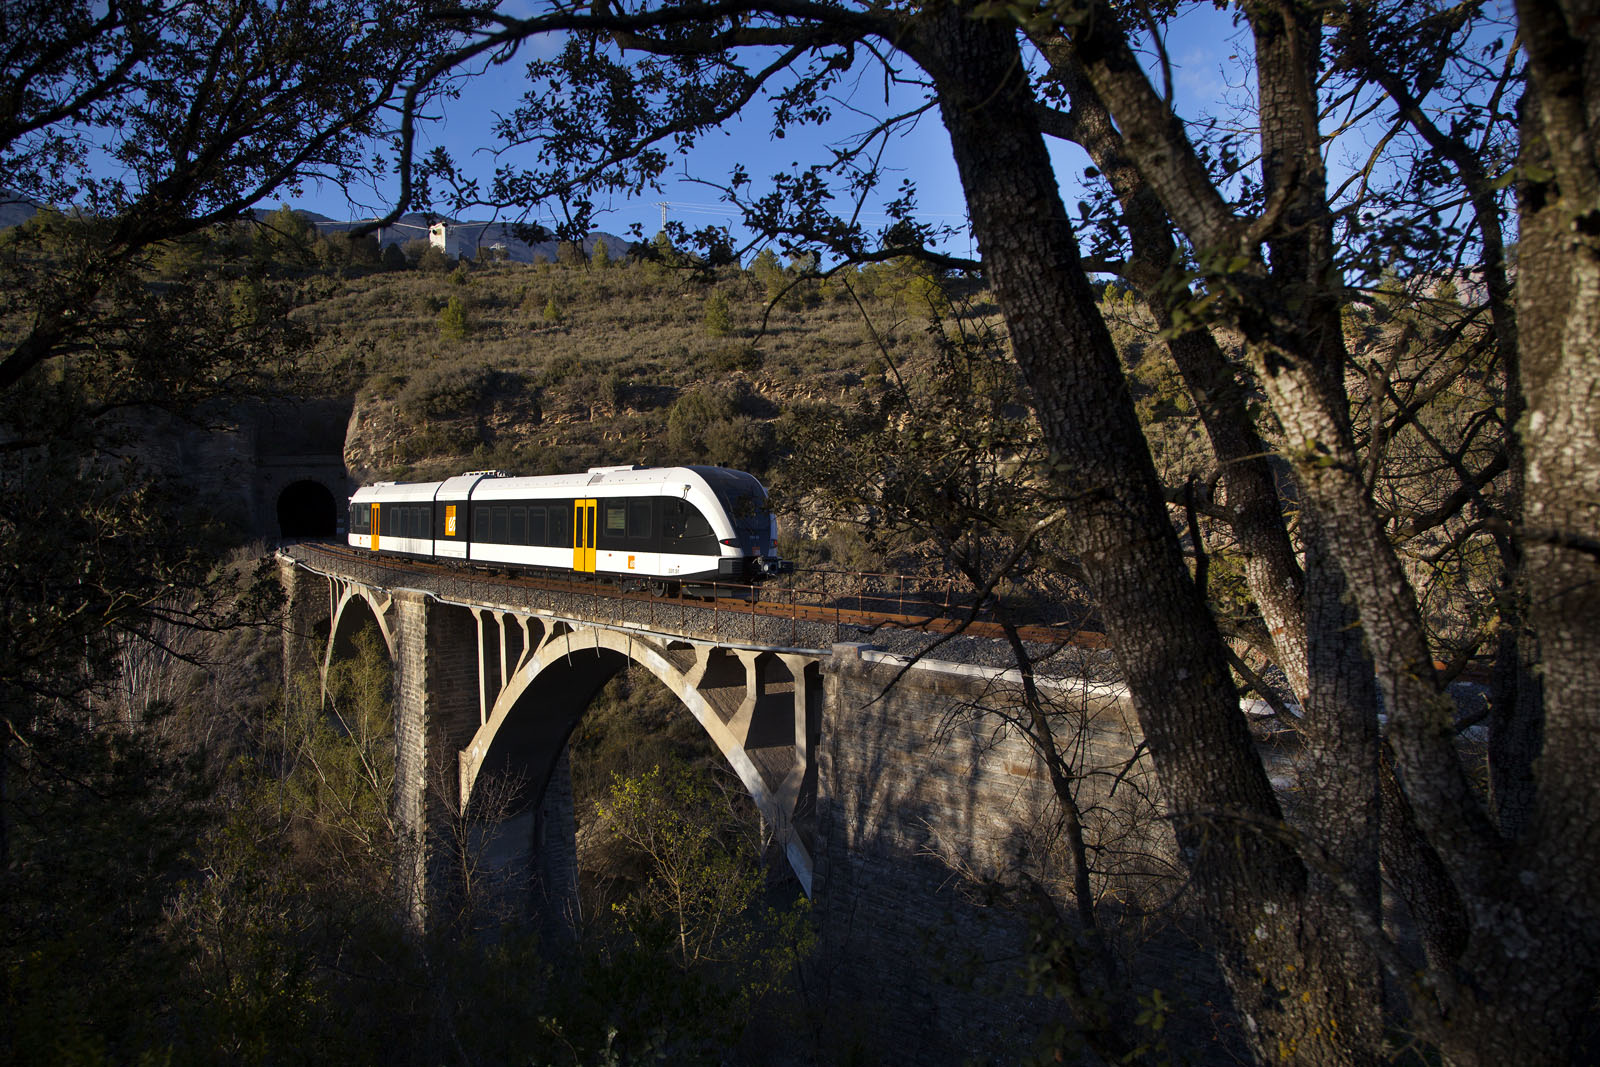 El tren panoràmic sobre un pont / El tren panorámico sobre un puente